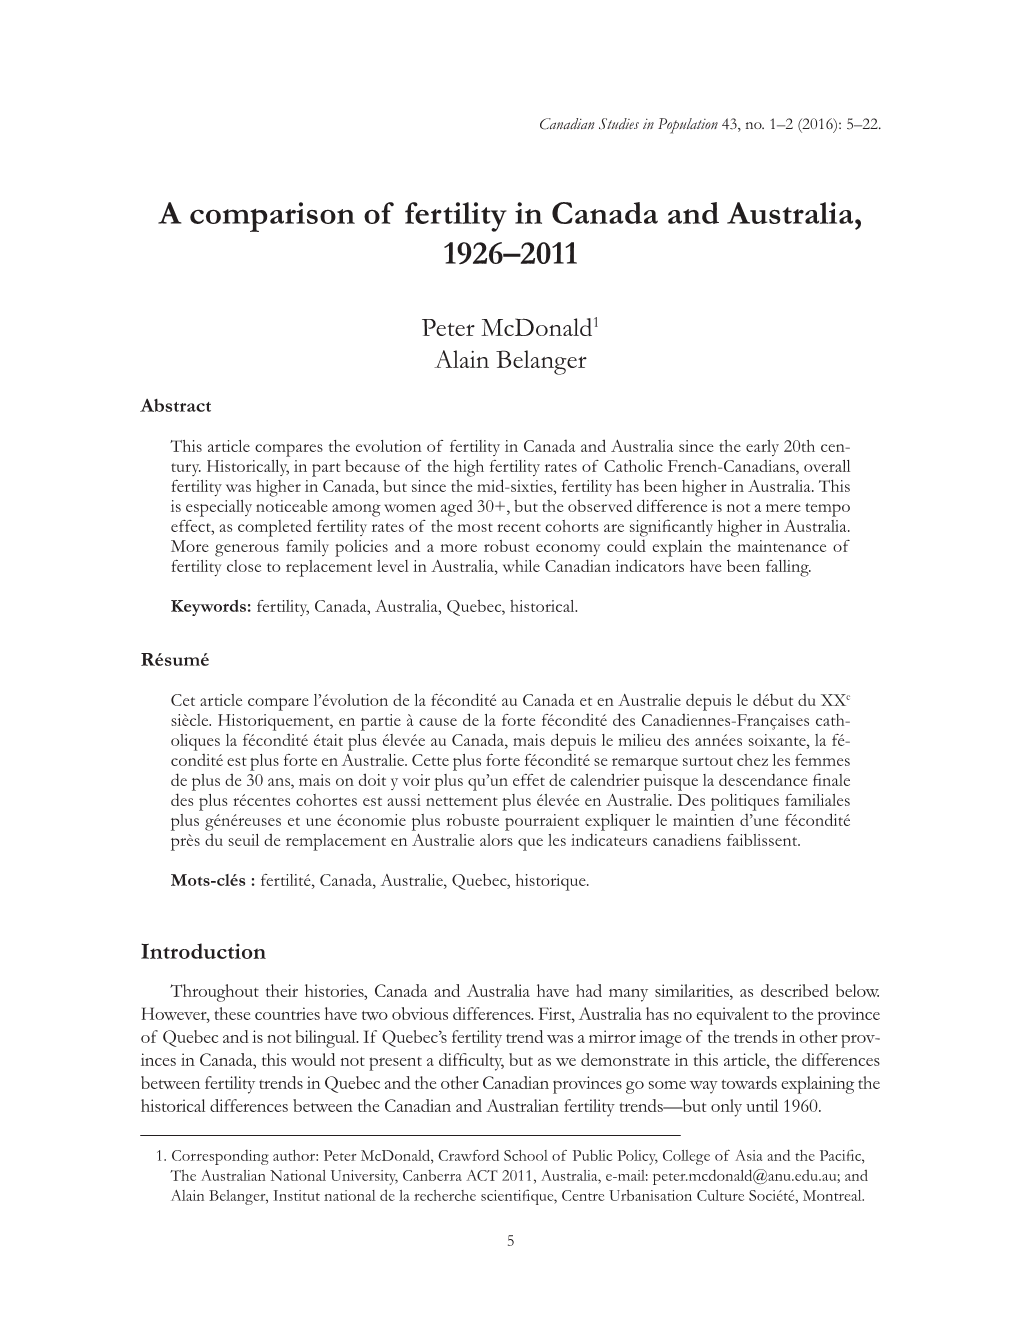 A Comparison of Fertility in Canada and Australia, 1926–2011